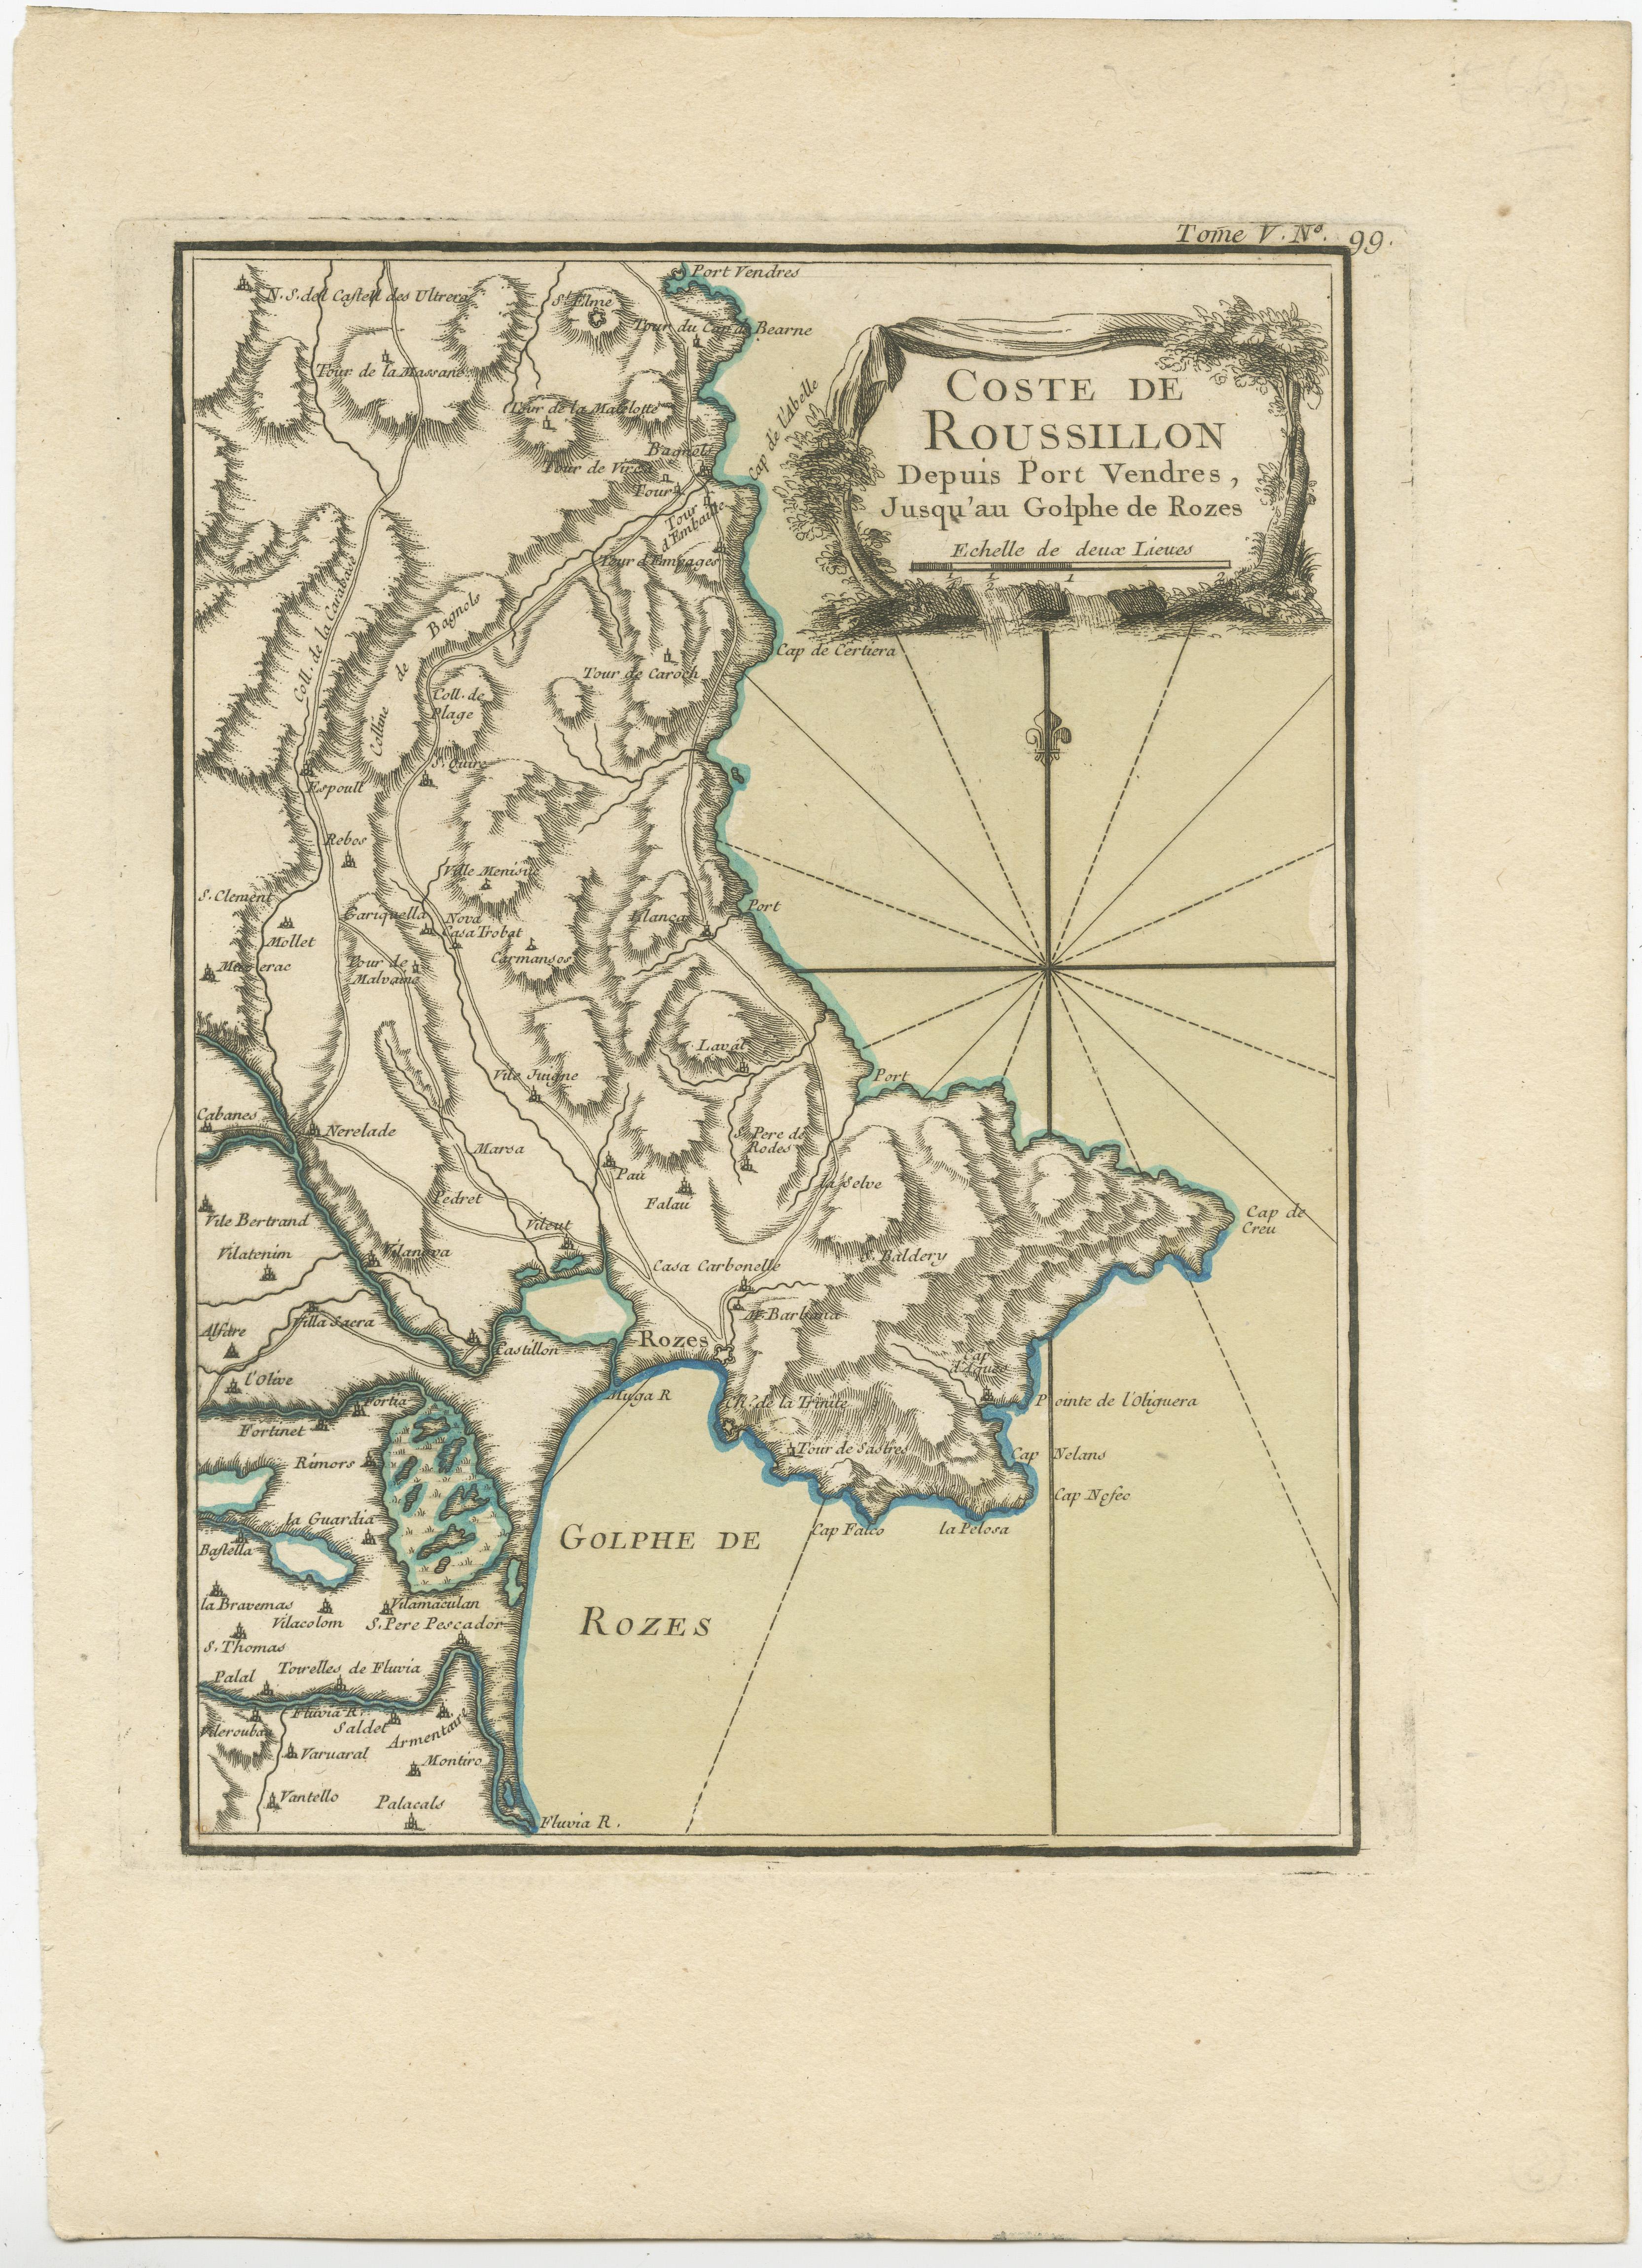 Carte ancienne intitulée 'Coste de Roussillon depuis Port Vendres, jusqu'au golphe de Rozes'. Carte originale de la côte du Roussillon, France. Cette carte est tirée du Petit Atlas Maritime (...) de J.N. Bellin. Publié en 1764. 

Bellin était un